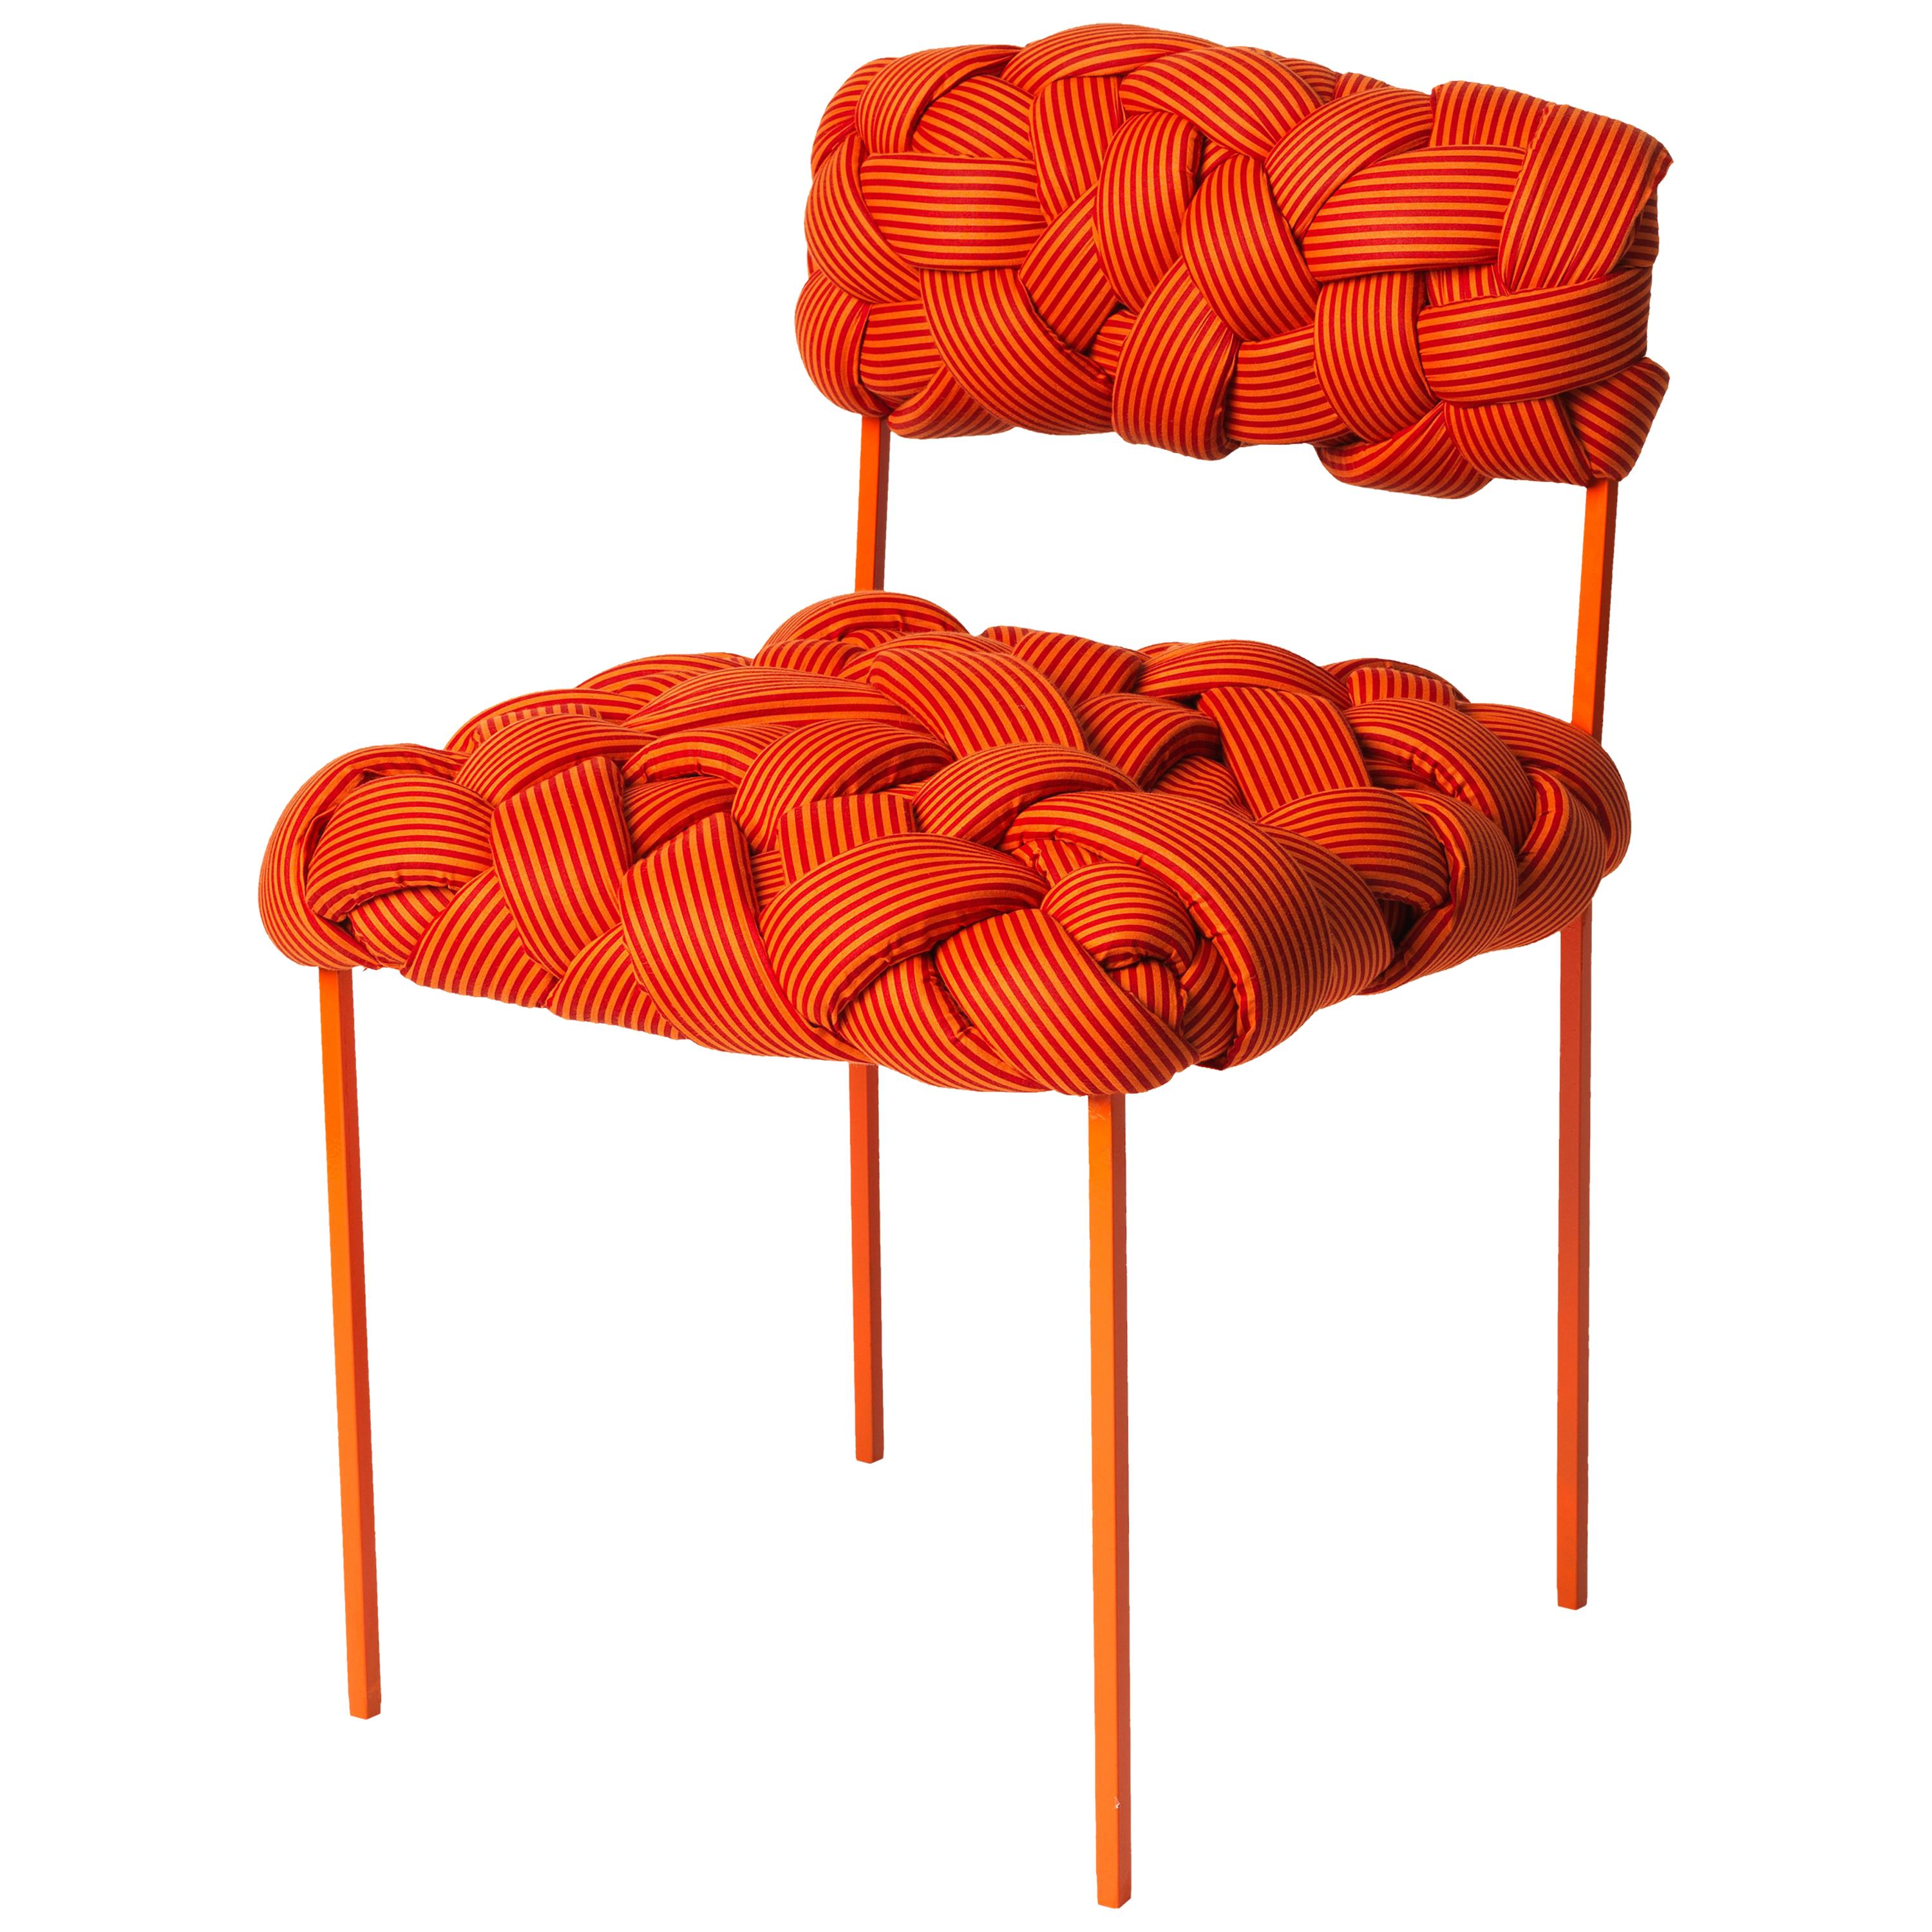 Chaise contemporaine « Cloud » avec tapisserie orange tissée à la main